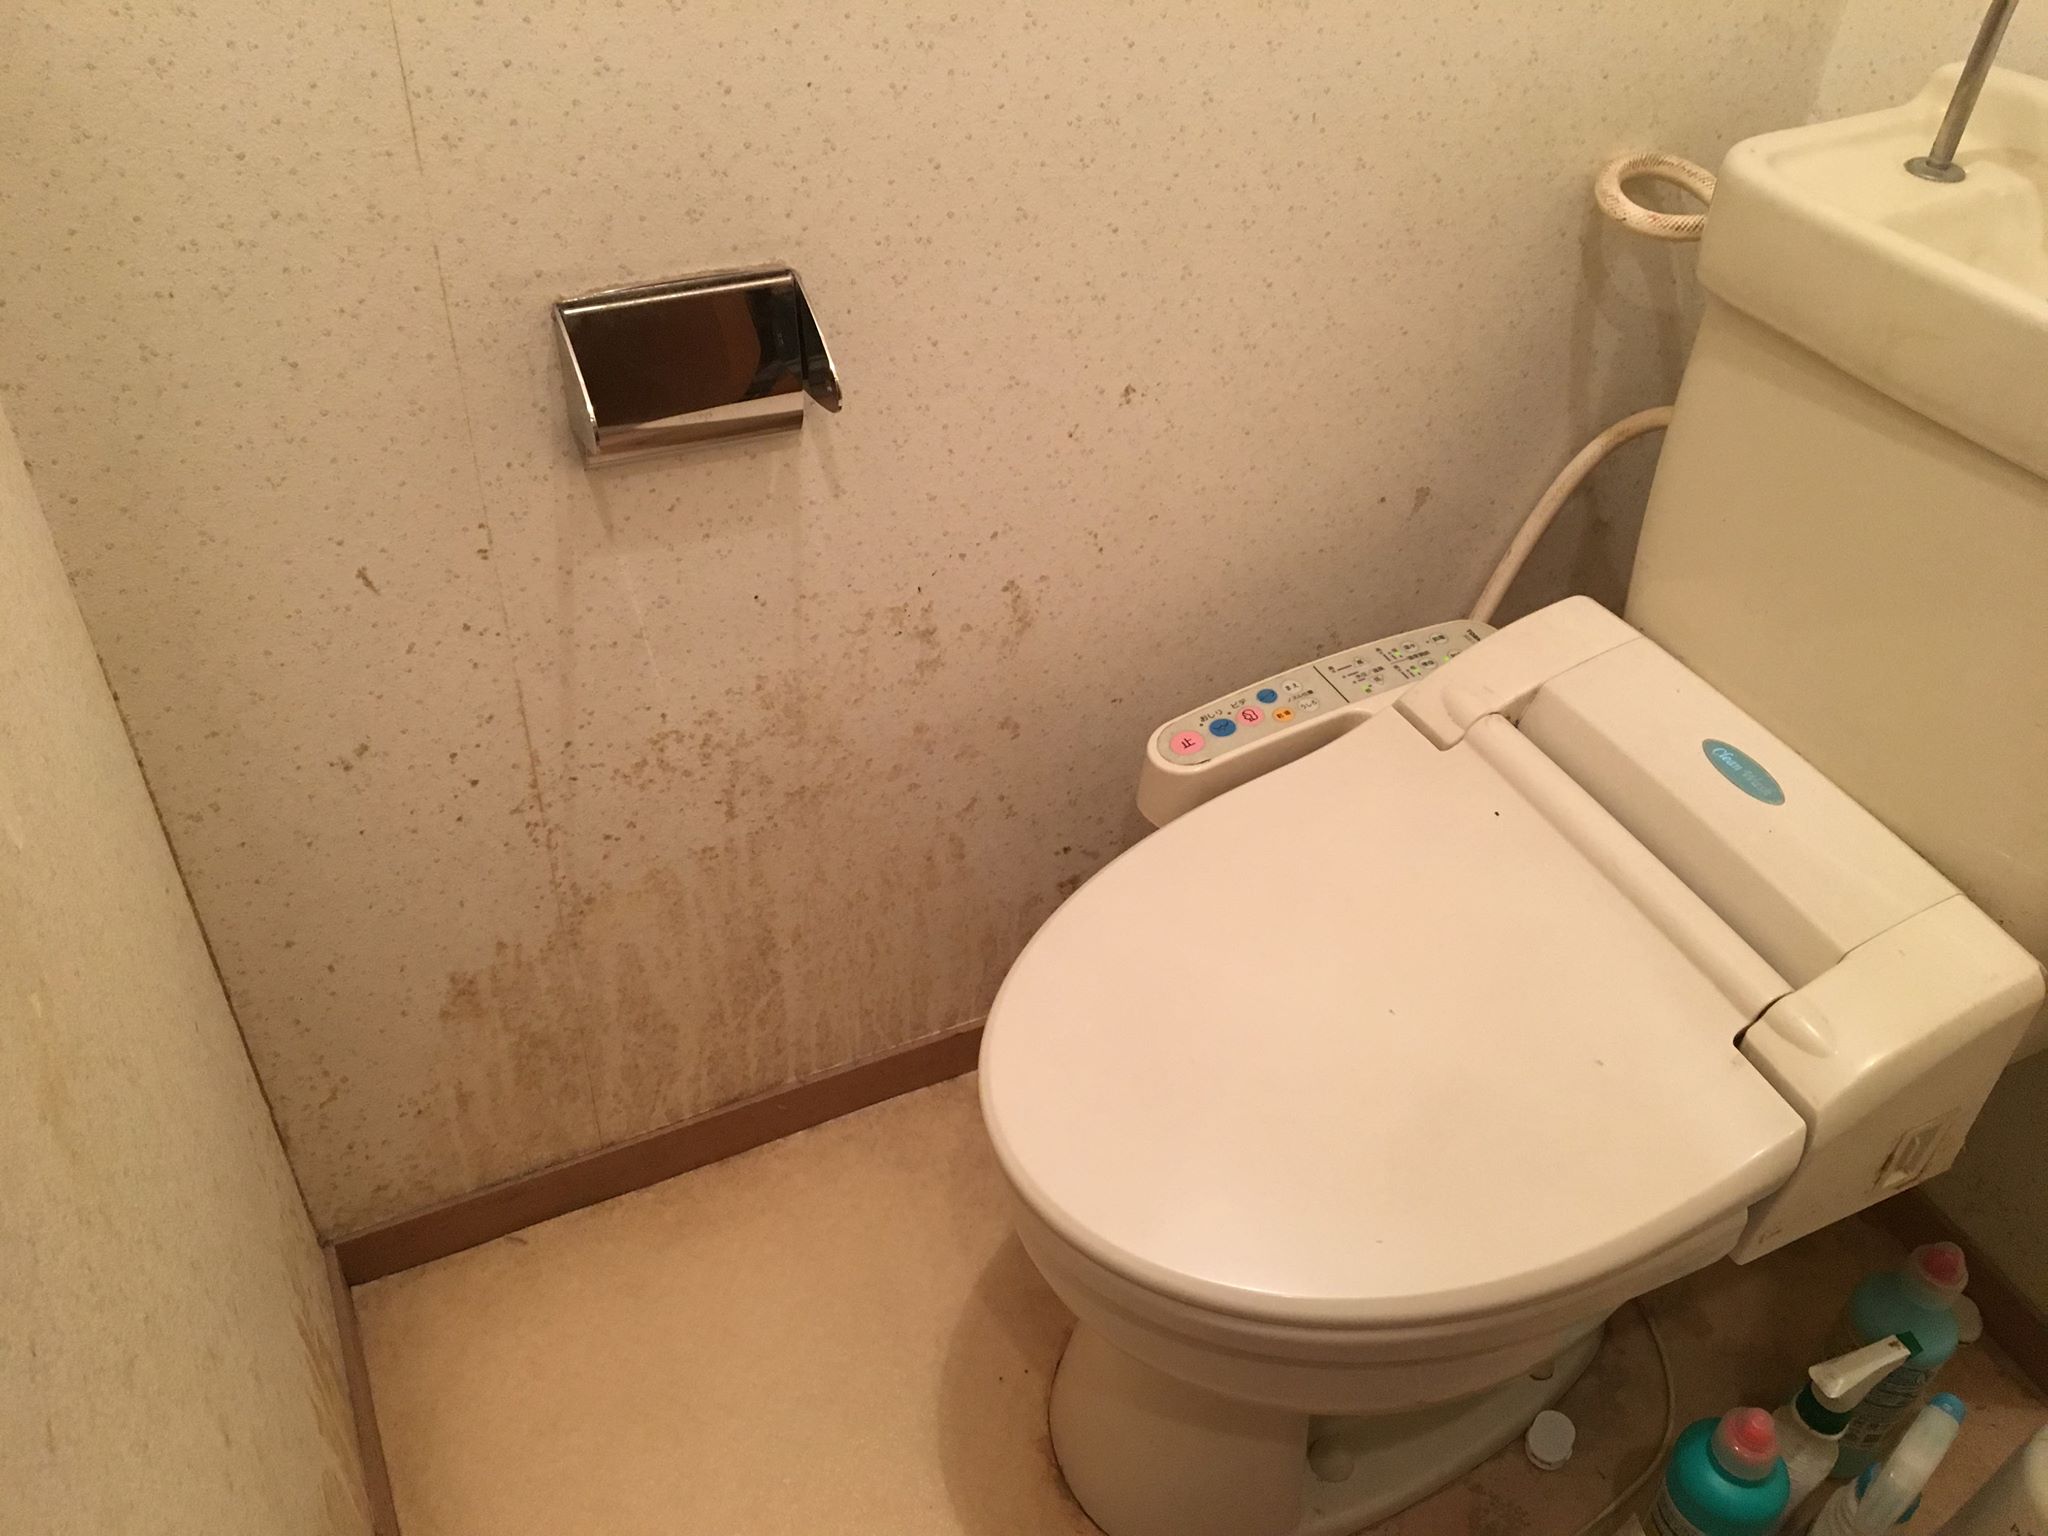 密室キケン 死にかけた トイレの黒カビを除去する方法と注意点 カビペディア カビの悩みならカビペディア